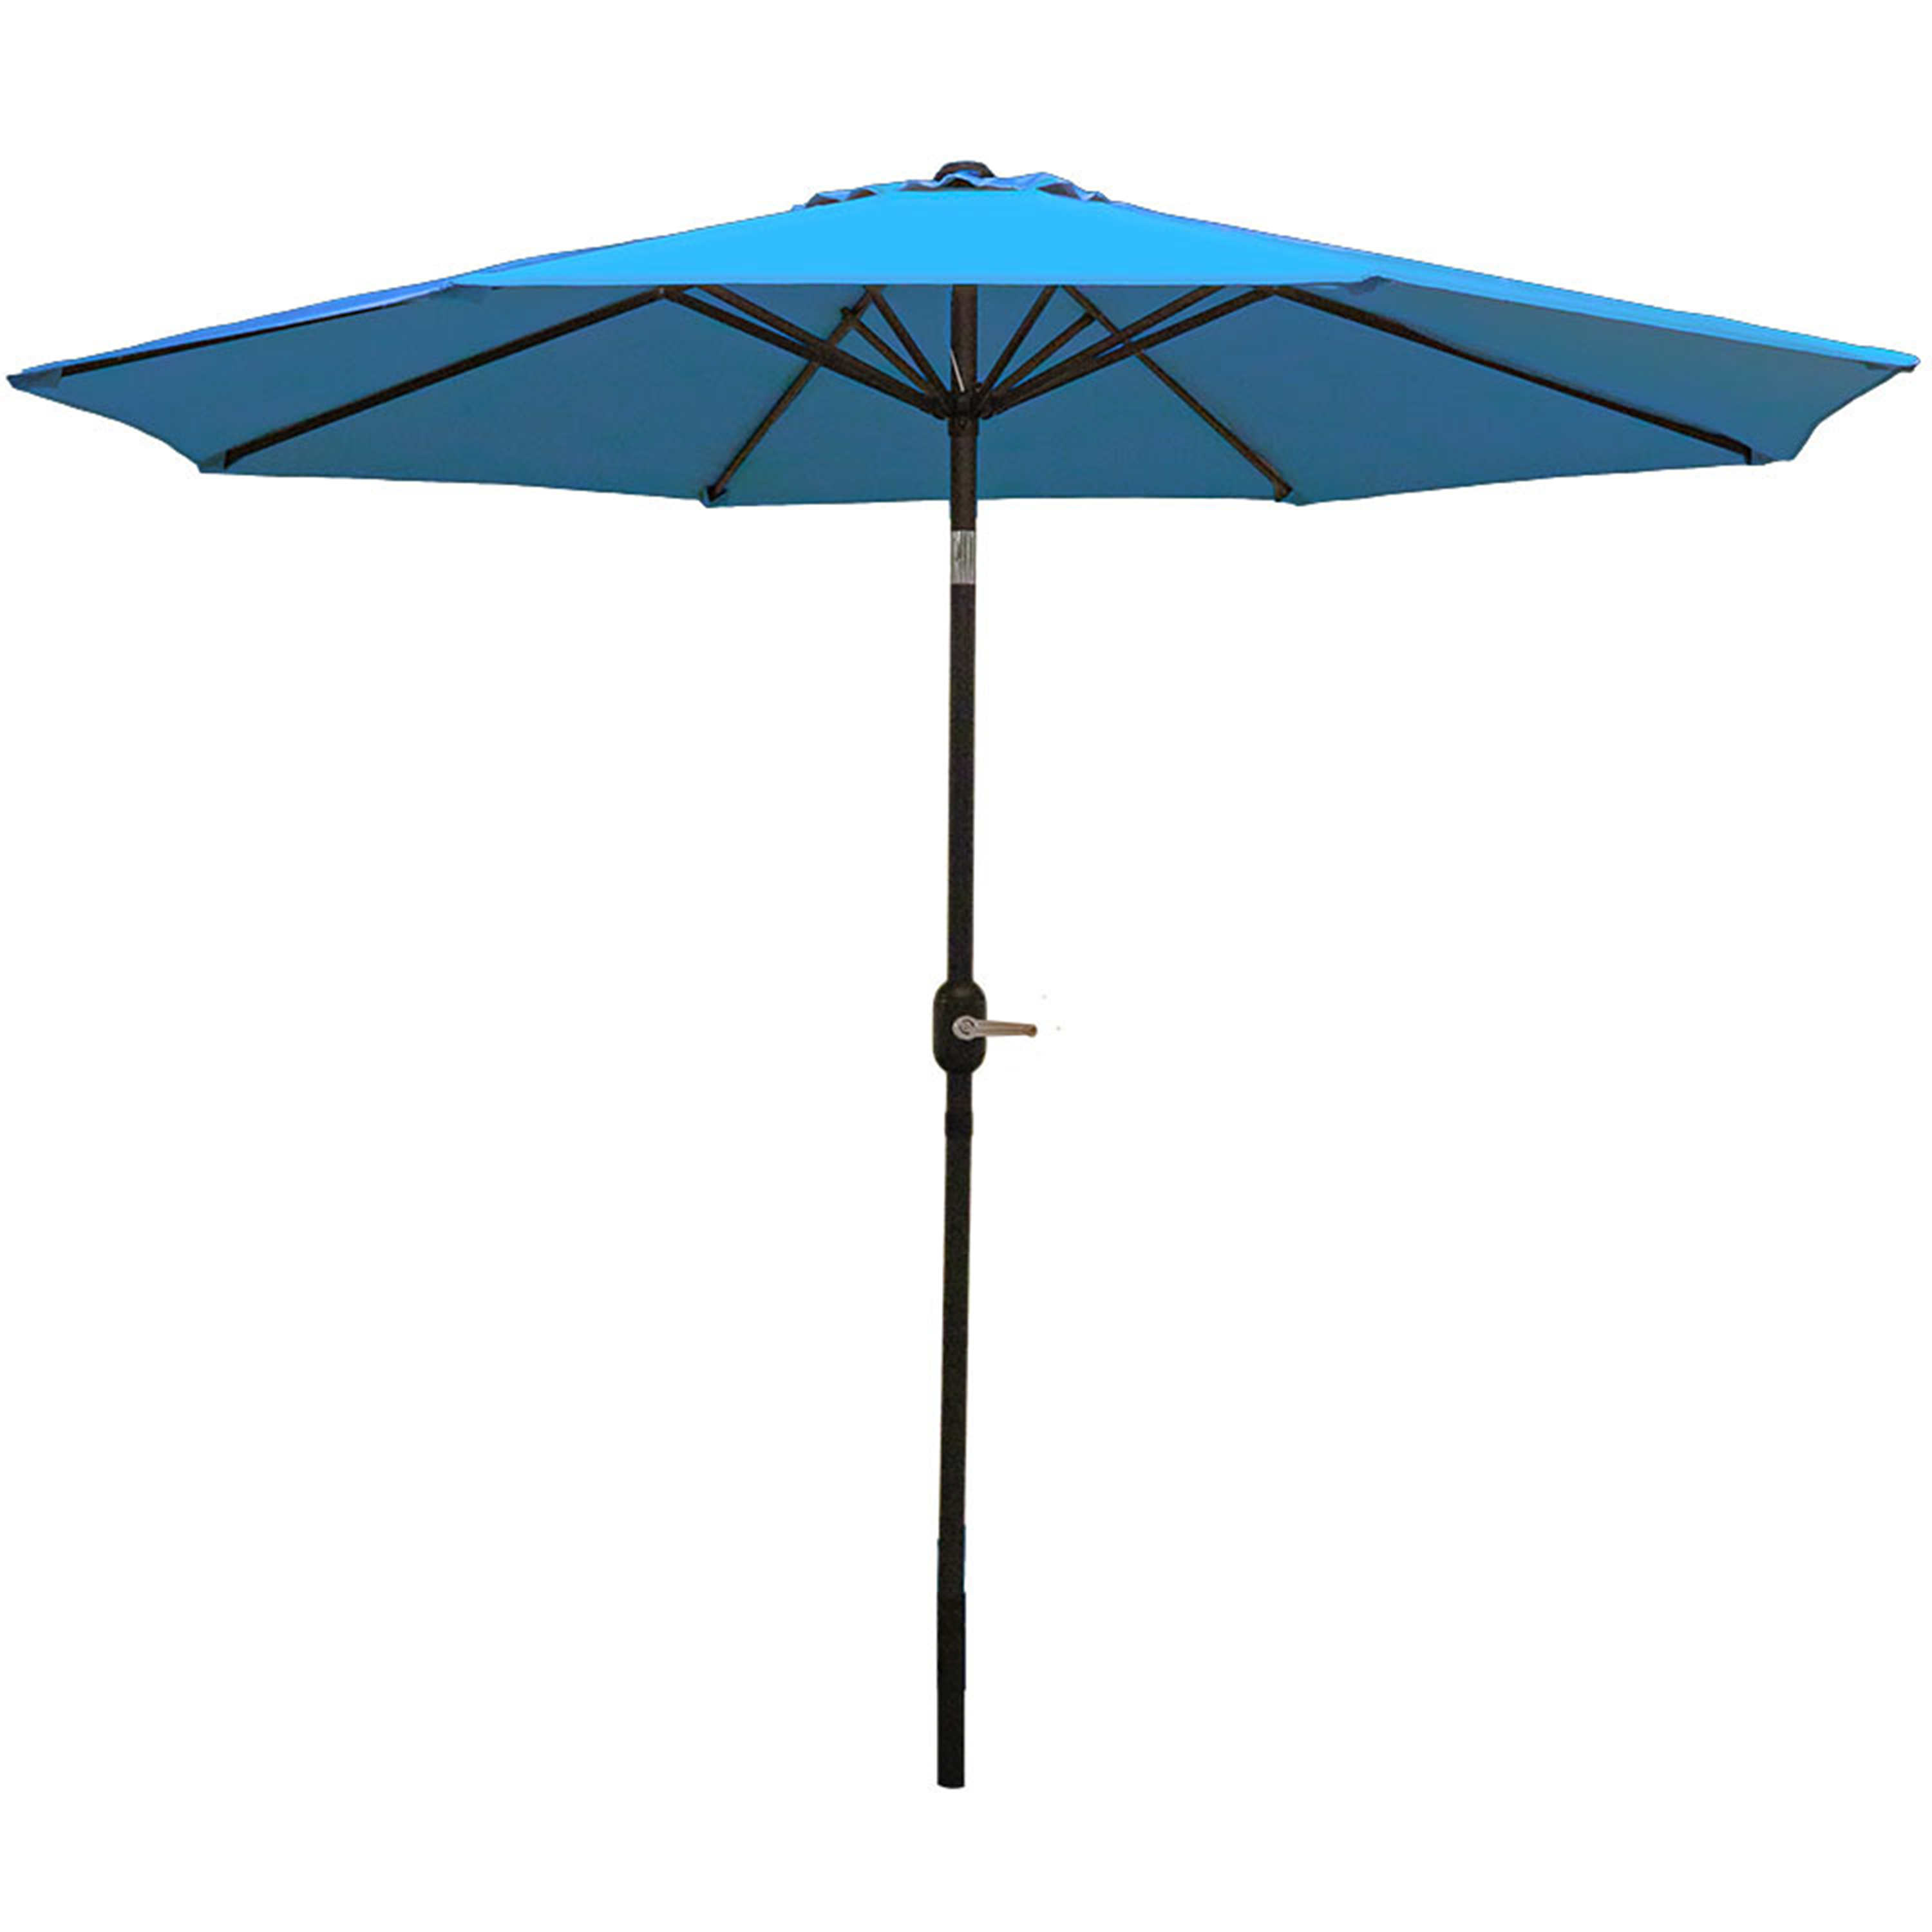 Sunnydaze Aluminum 9 Foot Patio Umbrella with Tilt & Crank, Turquoise